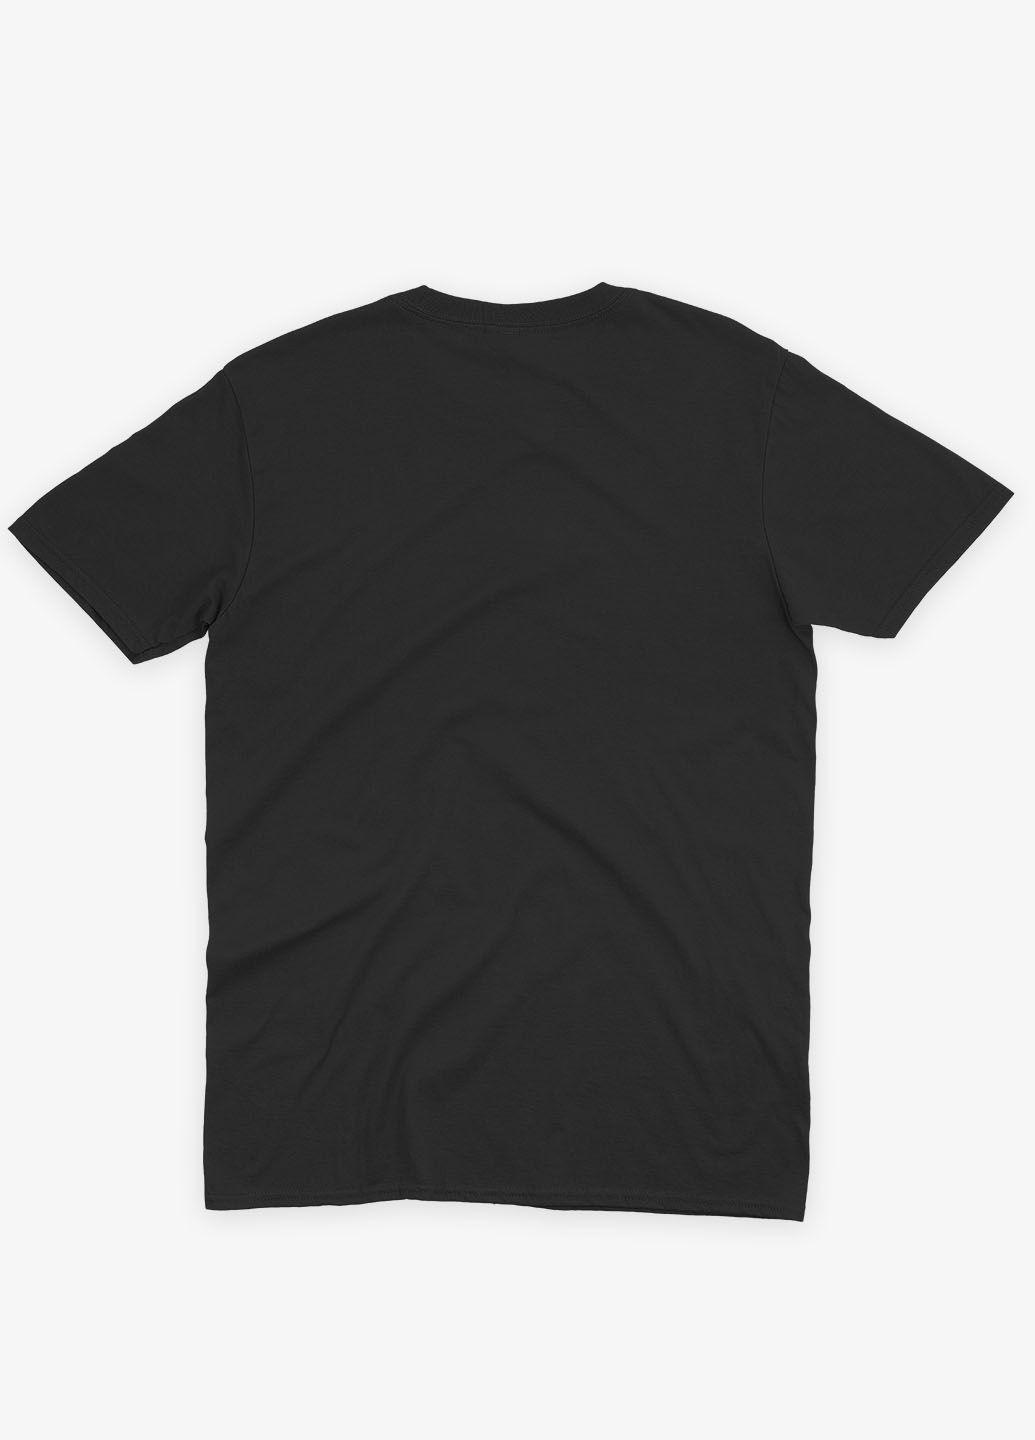 Чорна демісезонна футболка для хлопчика з патріотичним принтом пес патрон (ts001-2-bl-005-1-082-b) Modno